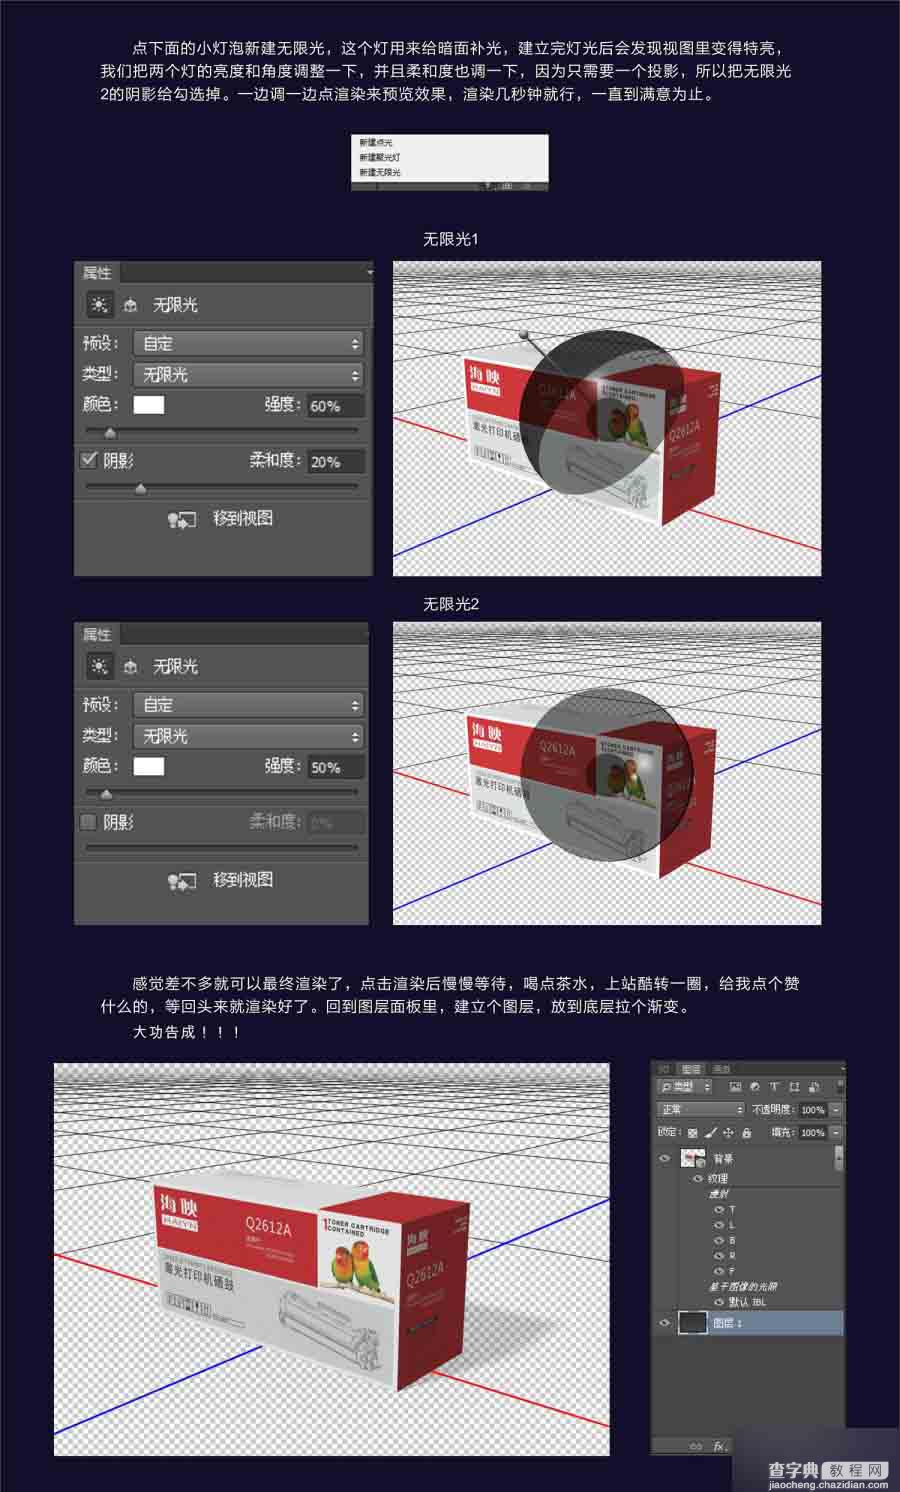 PhotoShop CC的3D功能制作一款产品包装盒立体效果8